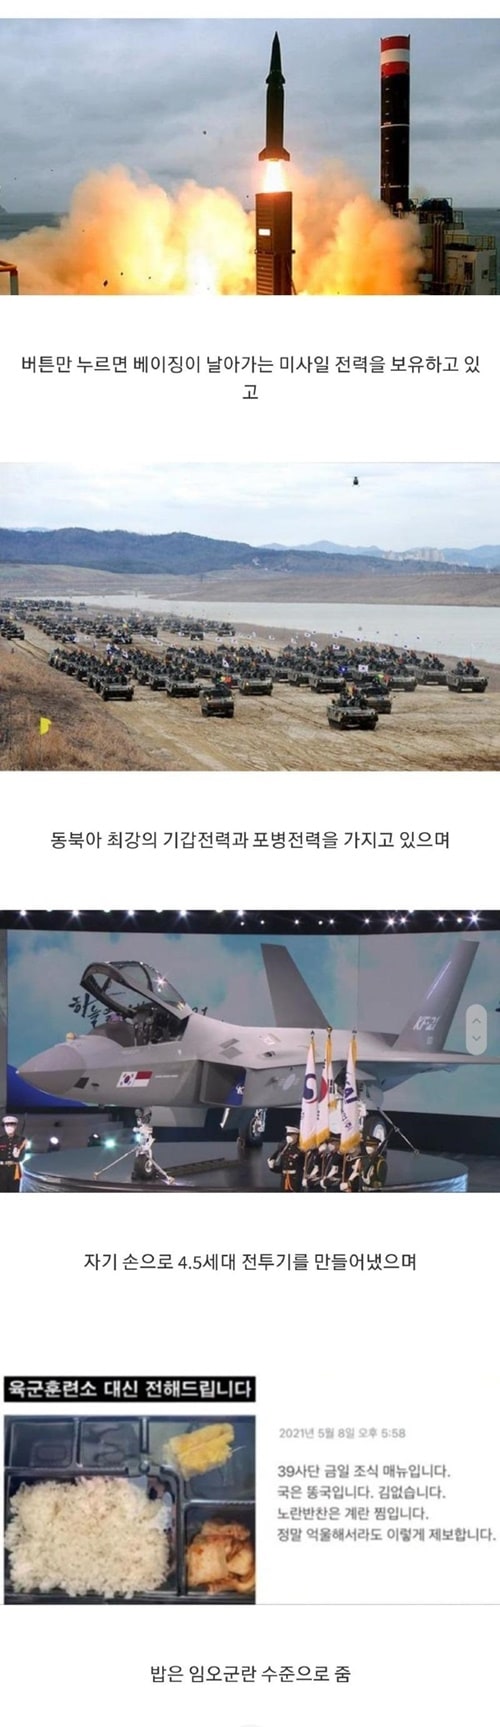 2021년 한국군 위엄